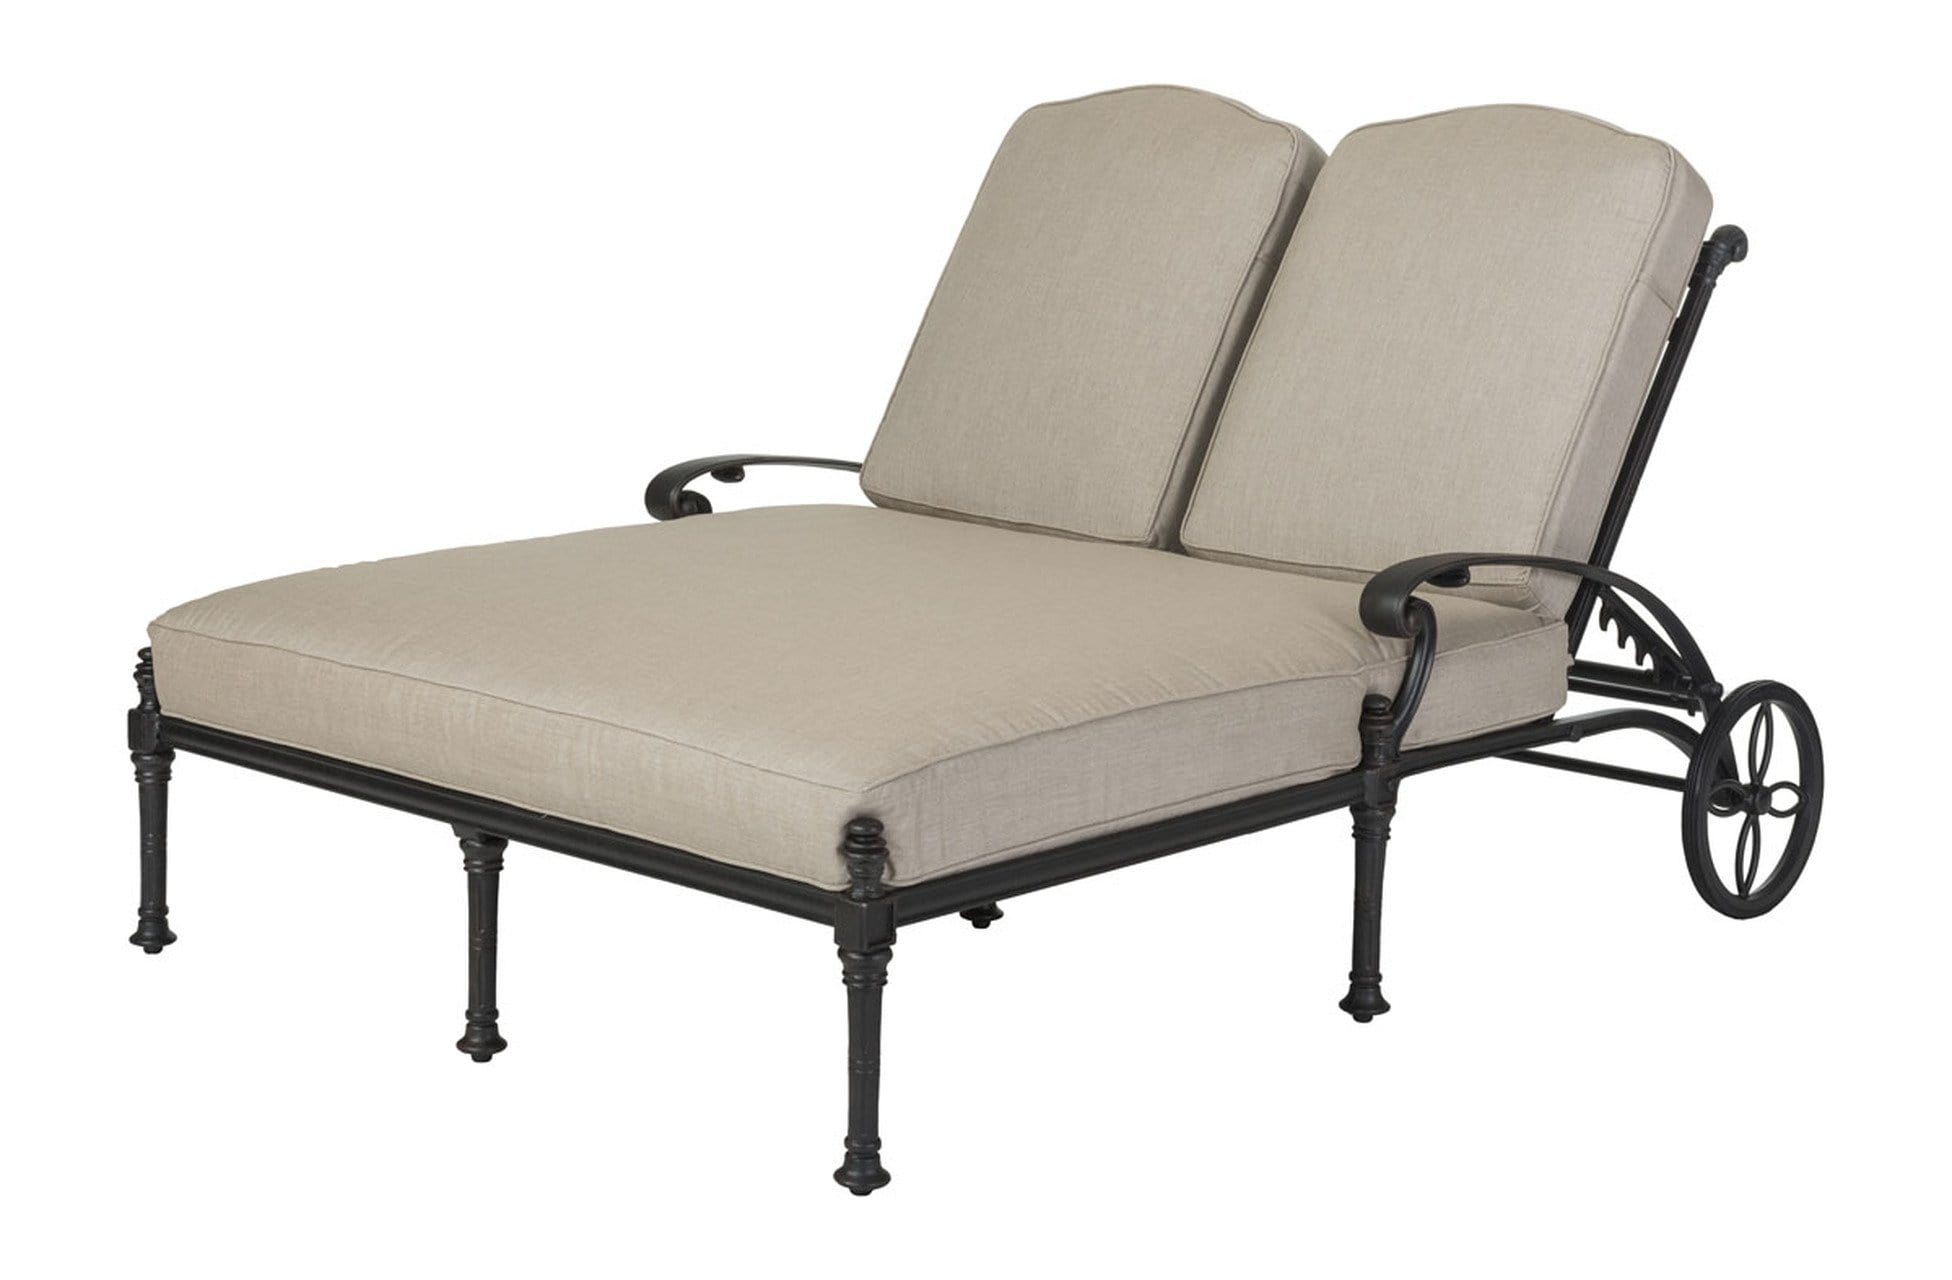 Gensun Coversation Set [Premium] Luxe Gensun Florence Cushion Double Chaise Lounge | Serving Tray | 3 Piece Conversation Set [Premium] - 12230099